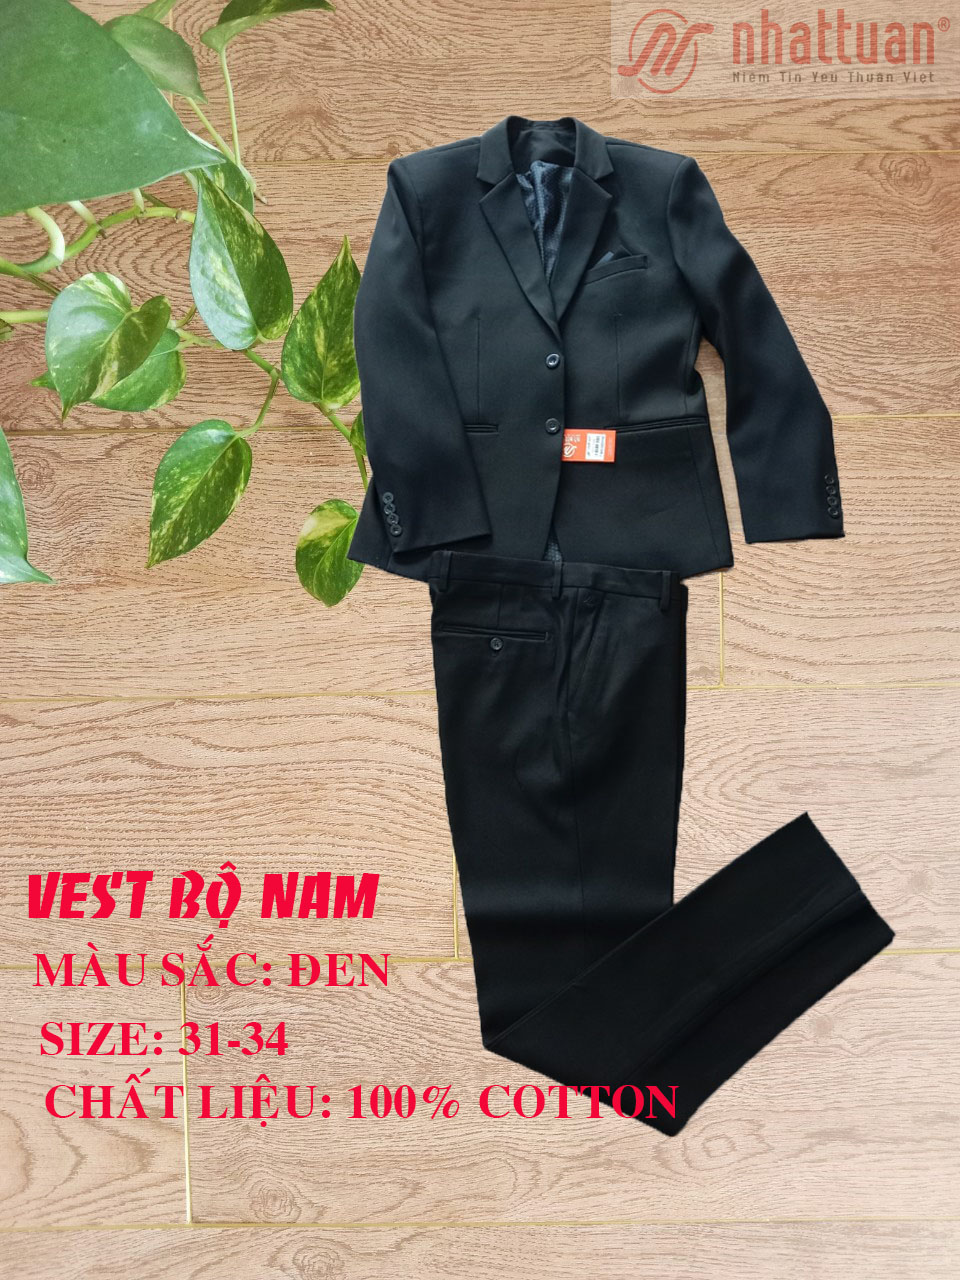 Bộ Vest nam phong cách lịch lãm 100% cotton của Nhật Tuấn (NATA), giảm giá 50